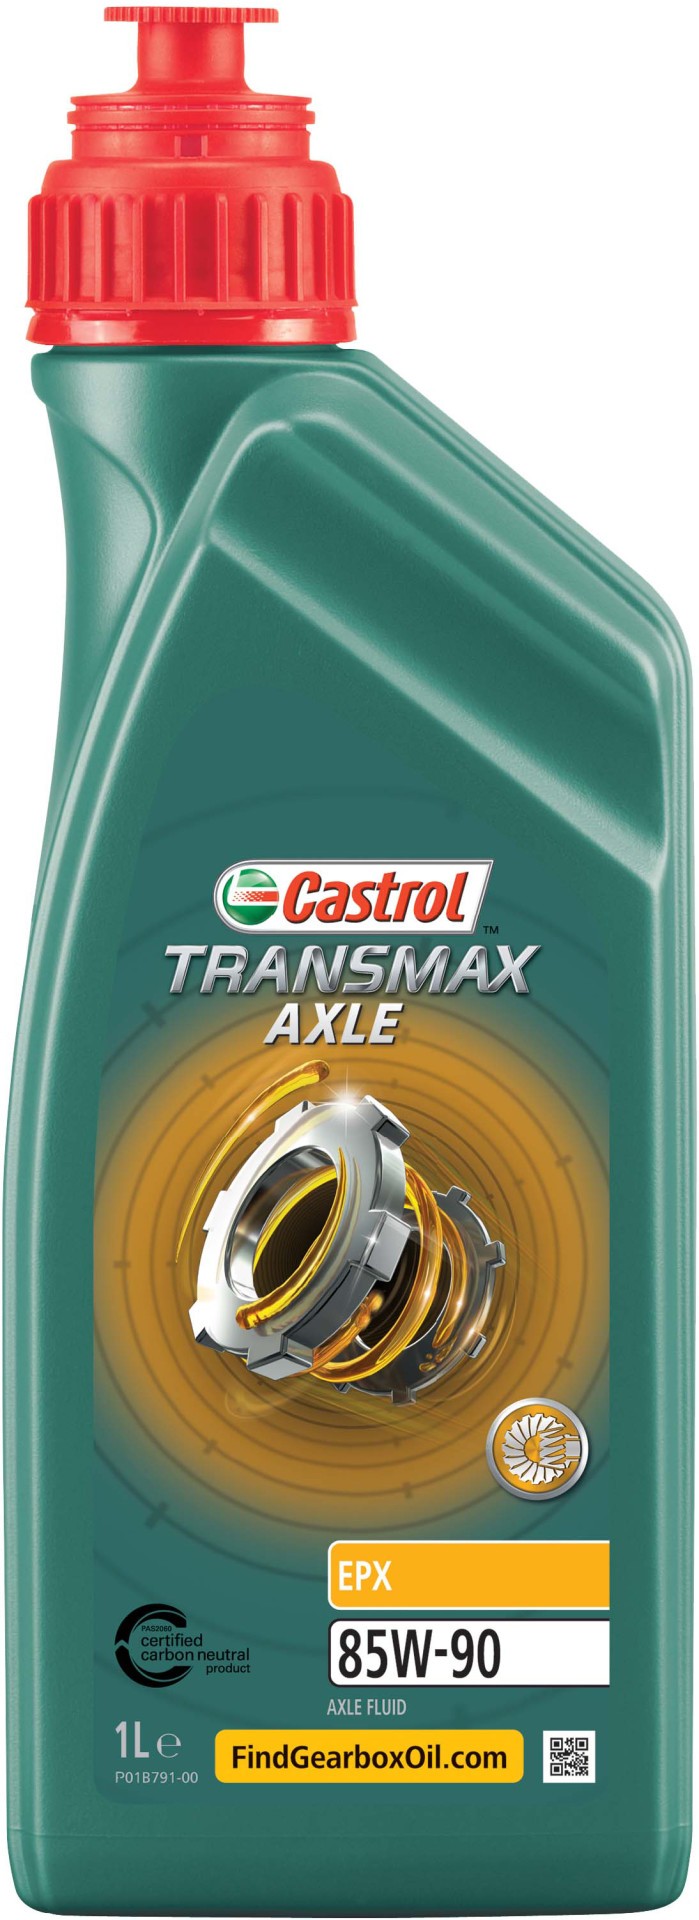 Schaltgetriebeöl 'Transmax Axle EPX 85W-90 [500ml]' | Castrol, Inhalt: 0,5 Liter, Spezifikation: ZF (TE-ML16C) Viskositätsklasse SAE: 85W-90